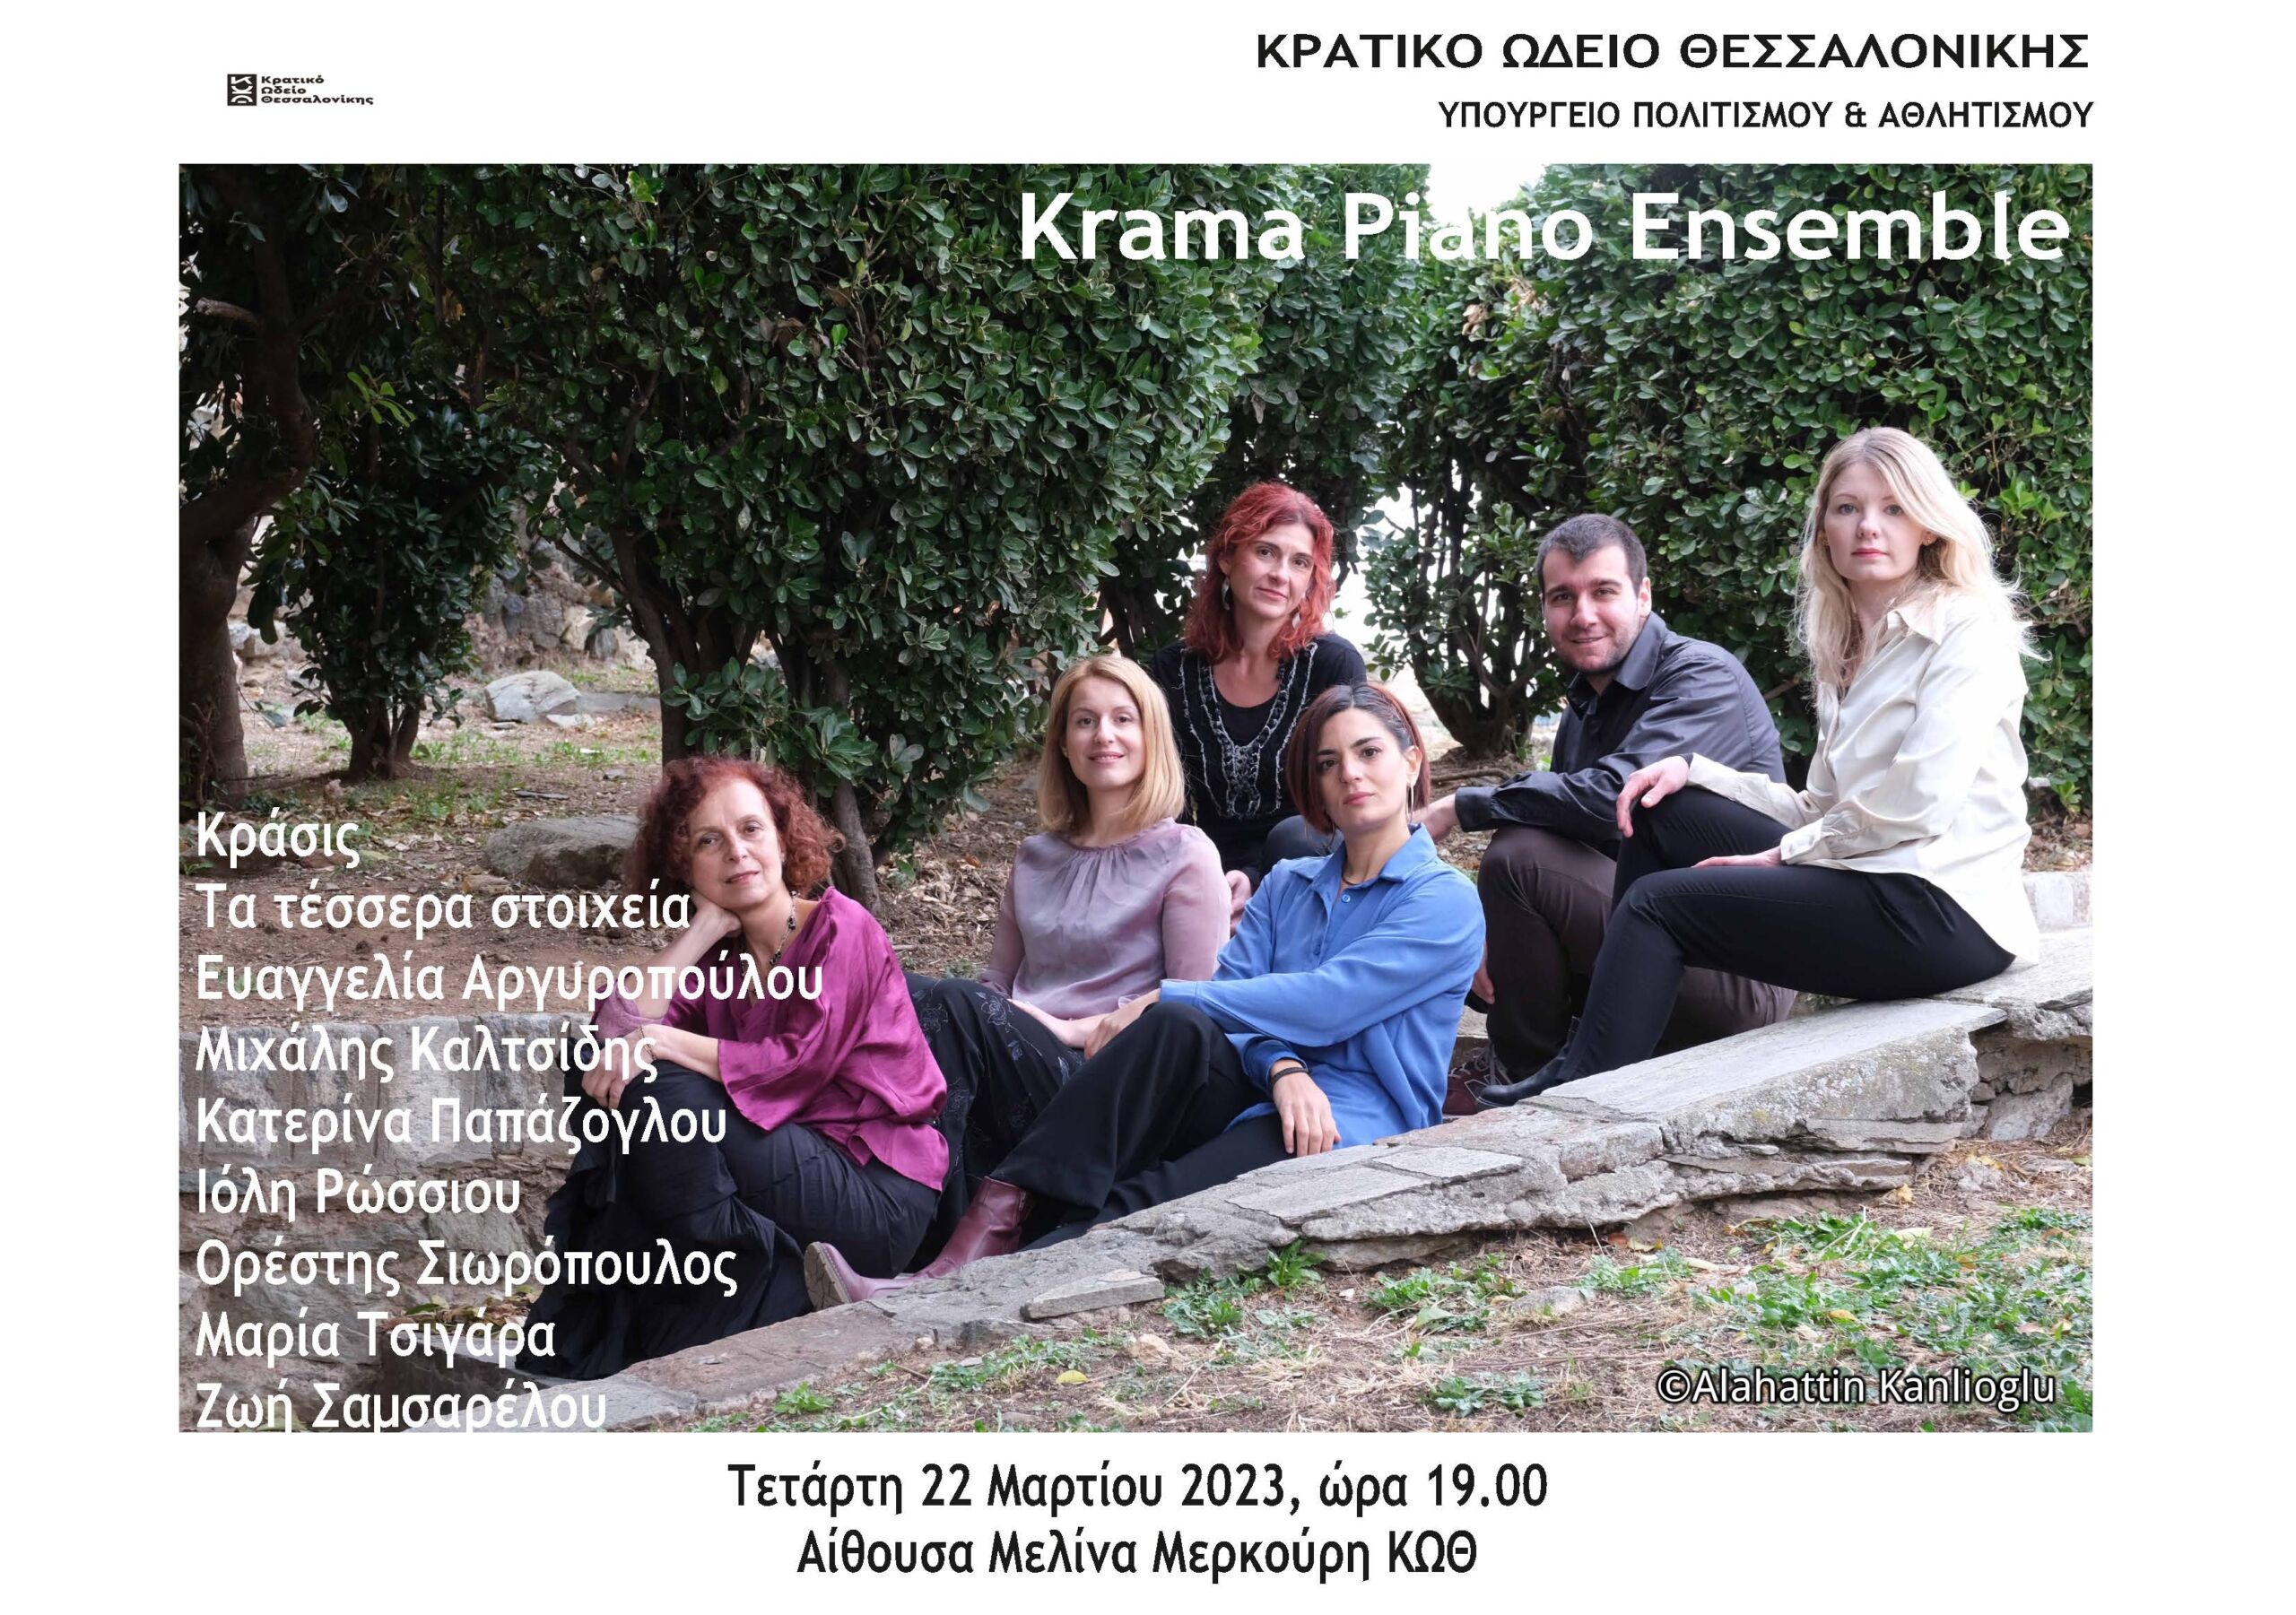 Πιανιστικό σύνολο "Krama Piano Ensemble"